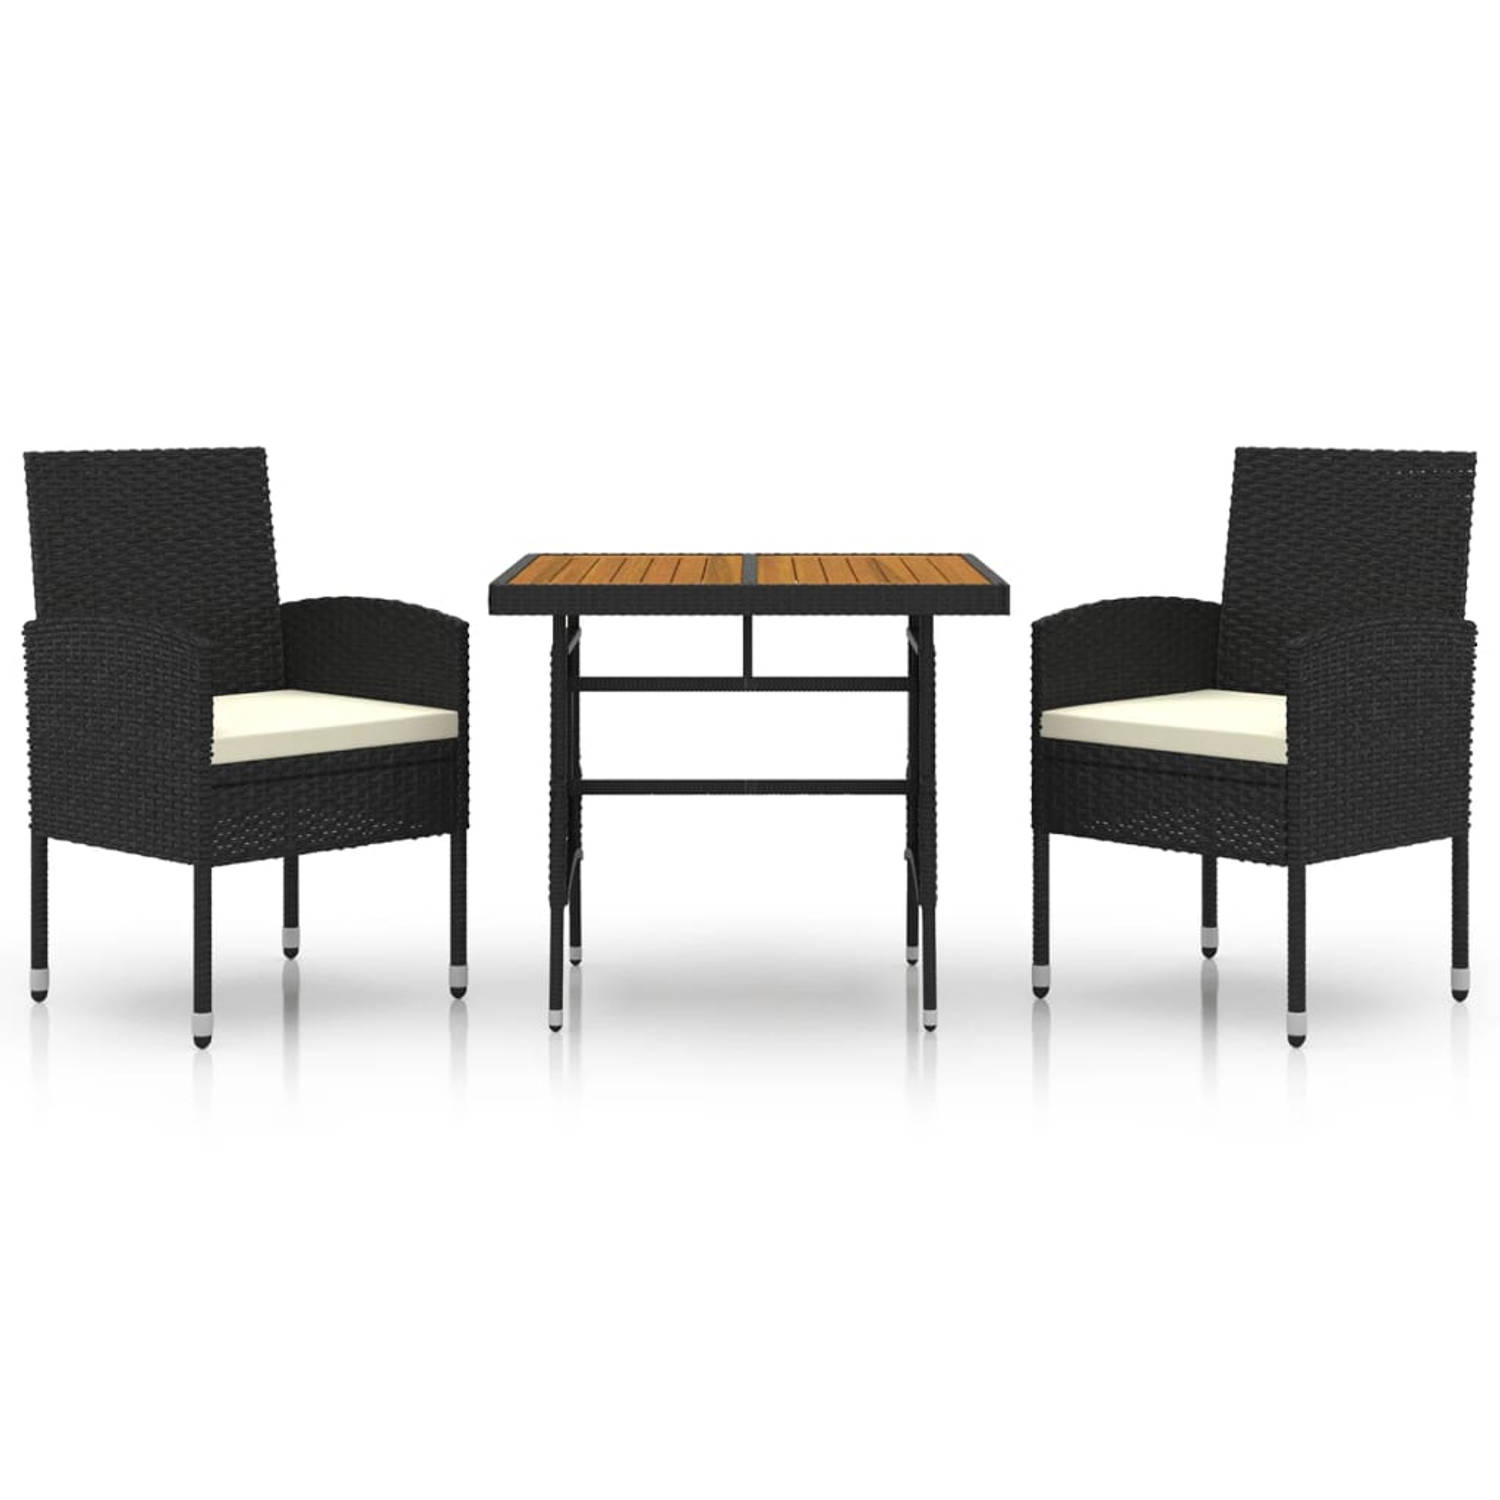 The Living Store Tuinset - naam - Tafel en 2 stoelen - Zwart - Afmetingen tafel- 70 x 70 x 72 cm - Afmetingen stoel- 52 x 56 x 88 cm - Kussens inbegrepen